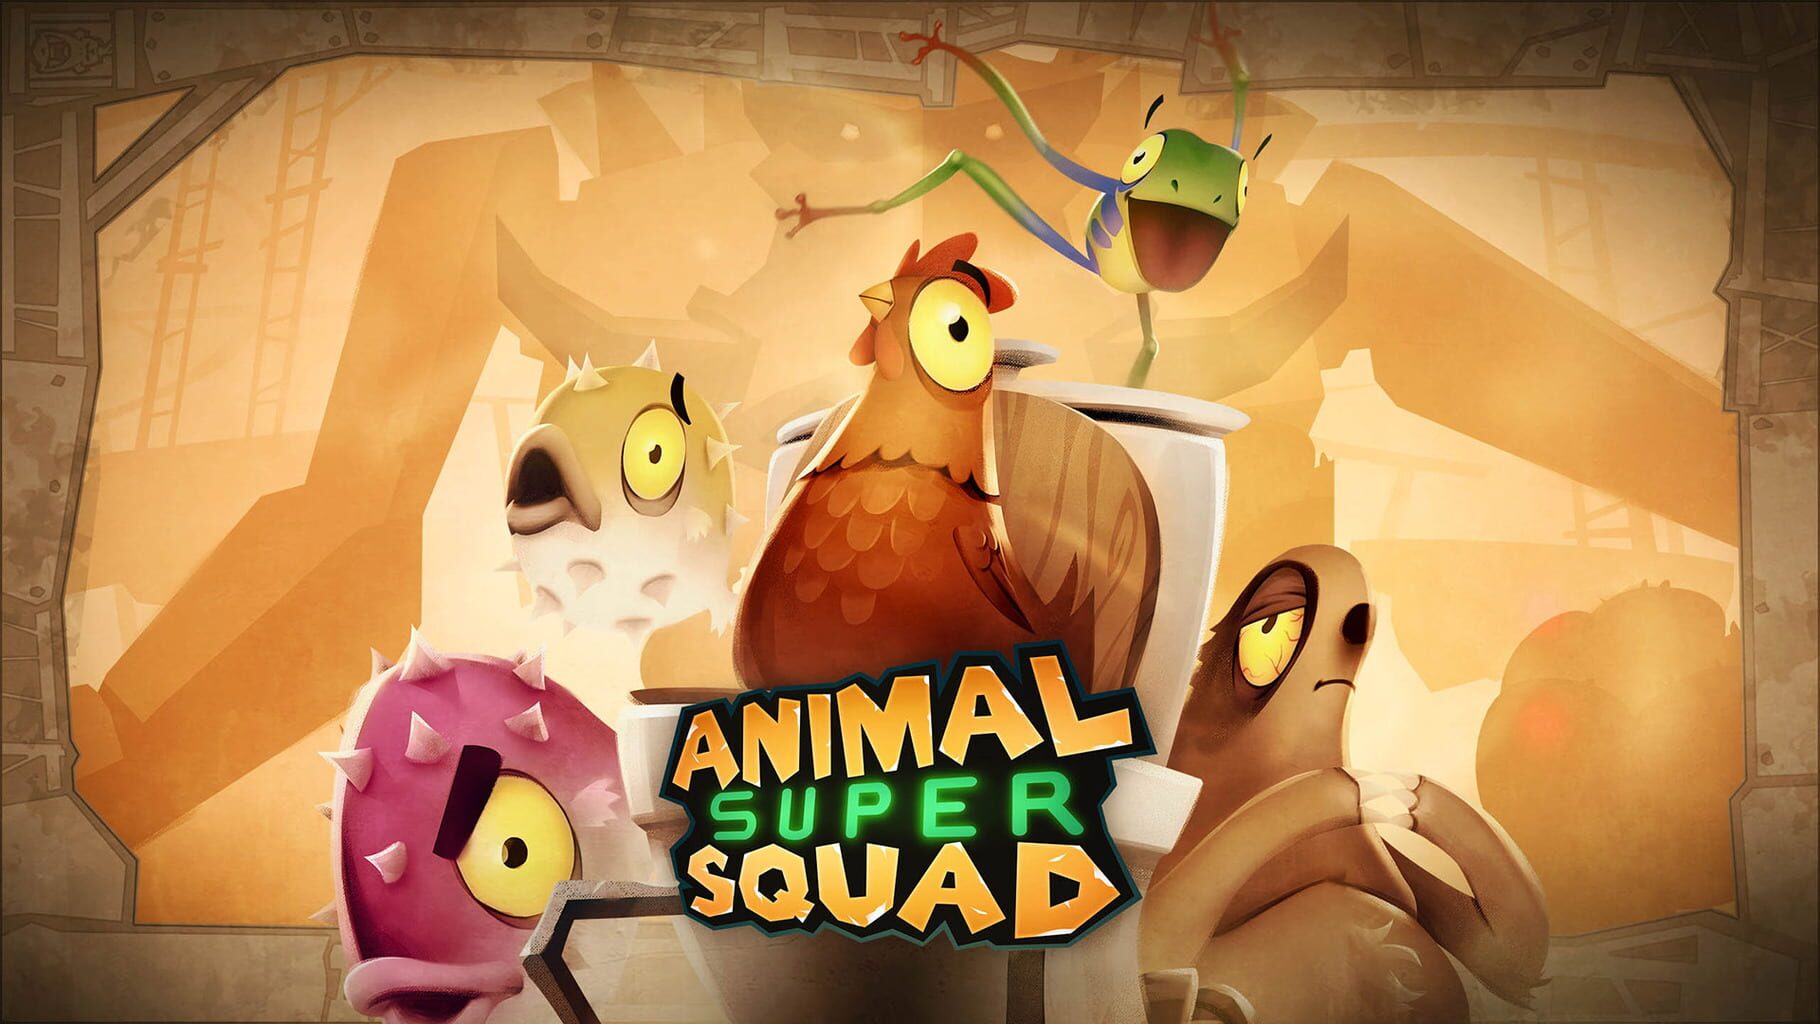 Animal Super Squad artwork